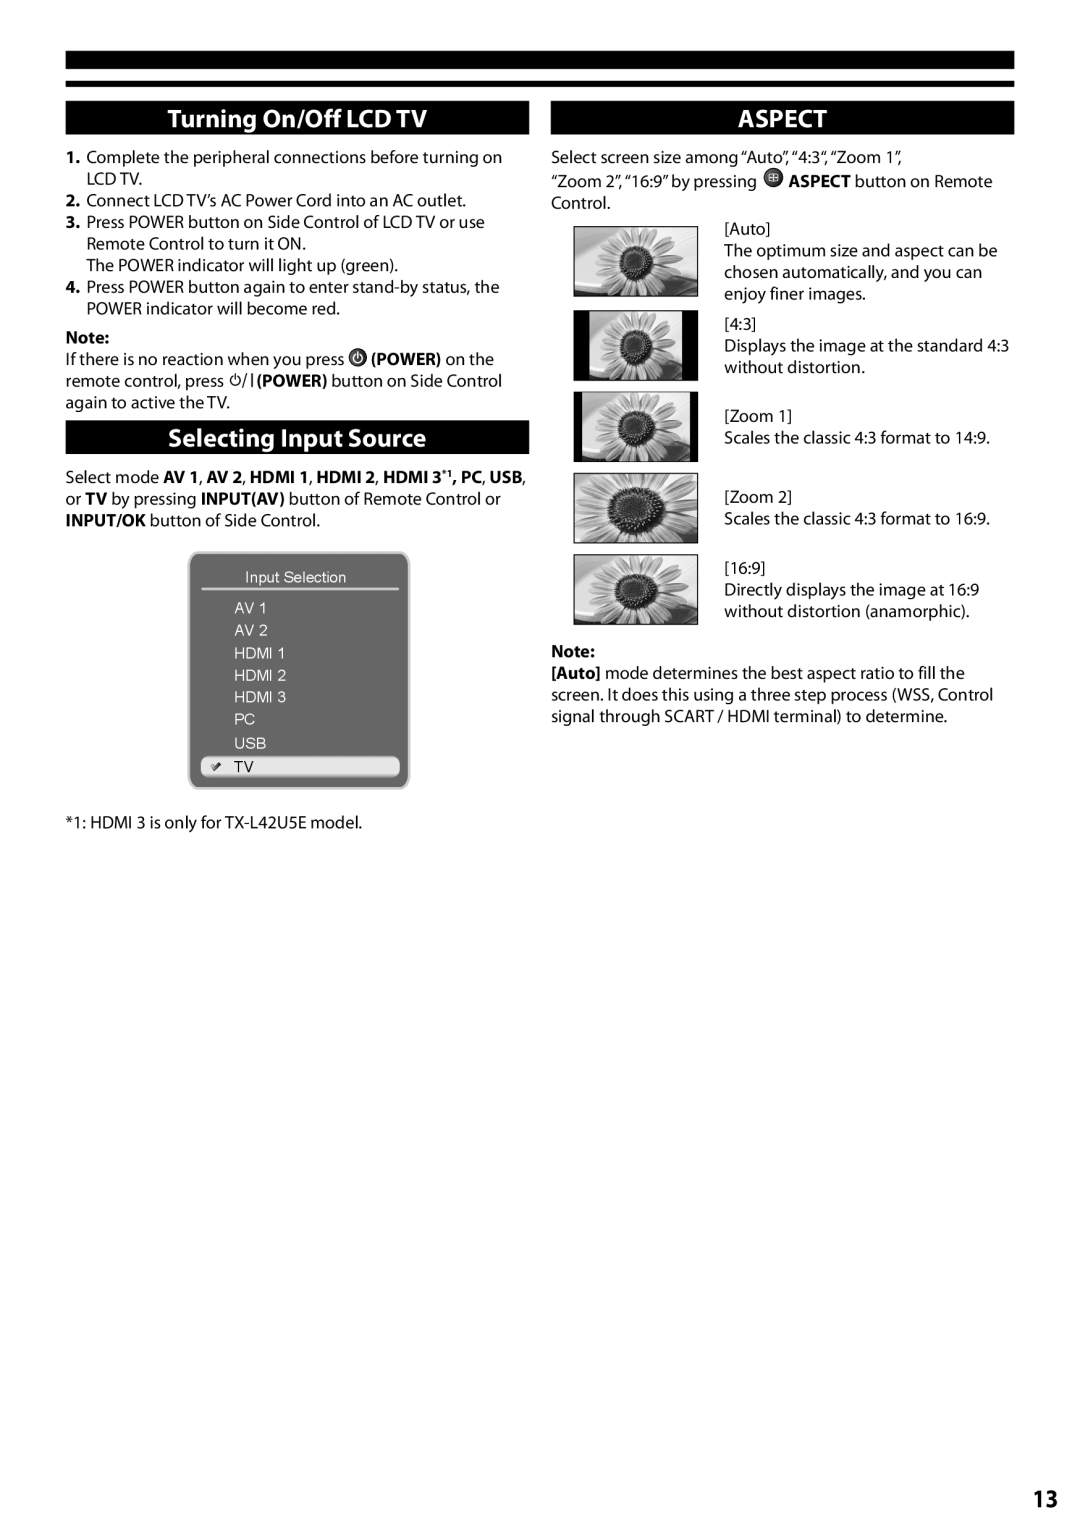 Panasonic TX-L32C5E, TX-L42U5E manual Turning On/Off LCD TV, Selecting Input Source, Aspect 